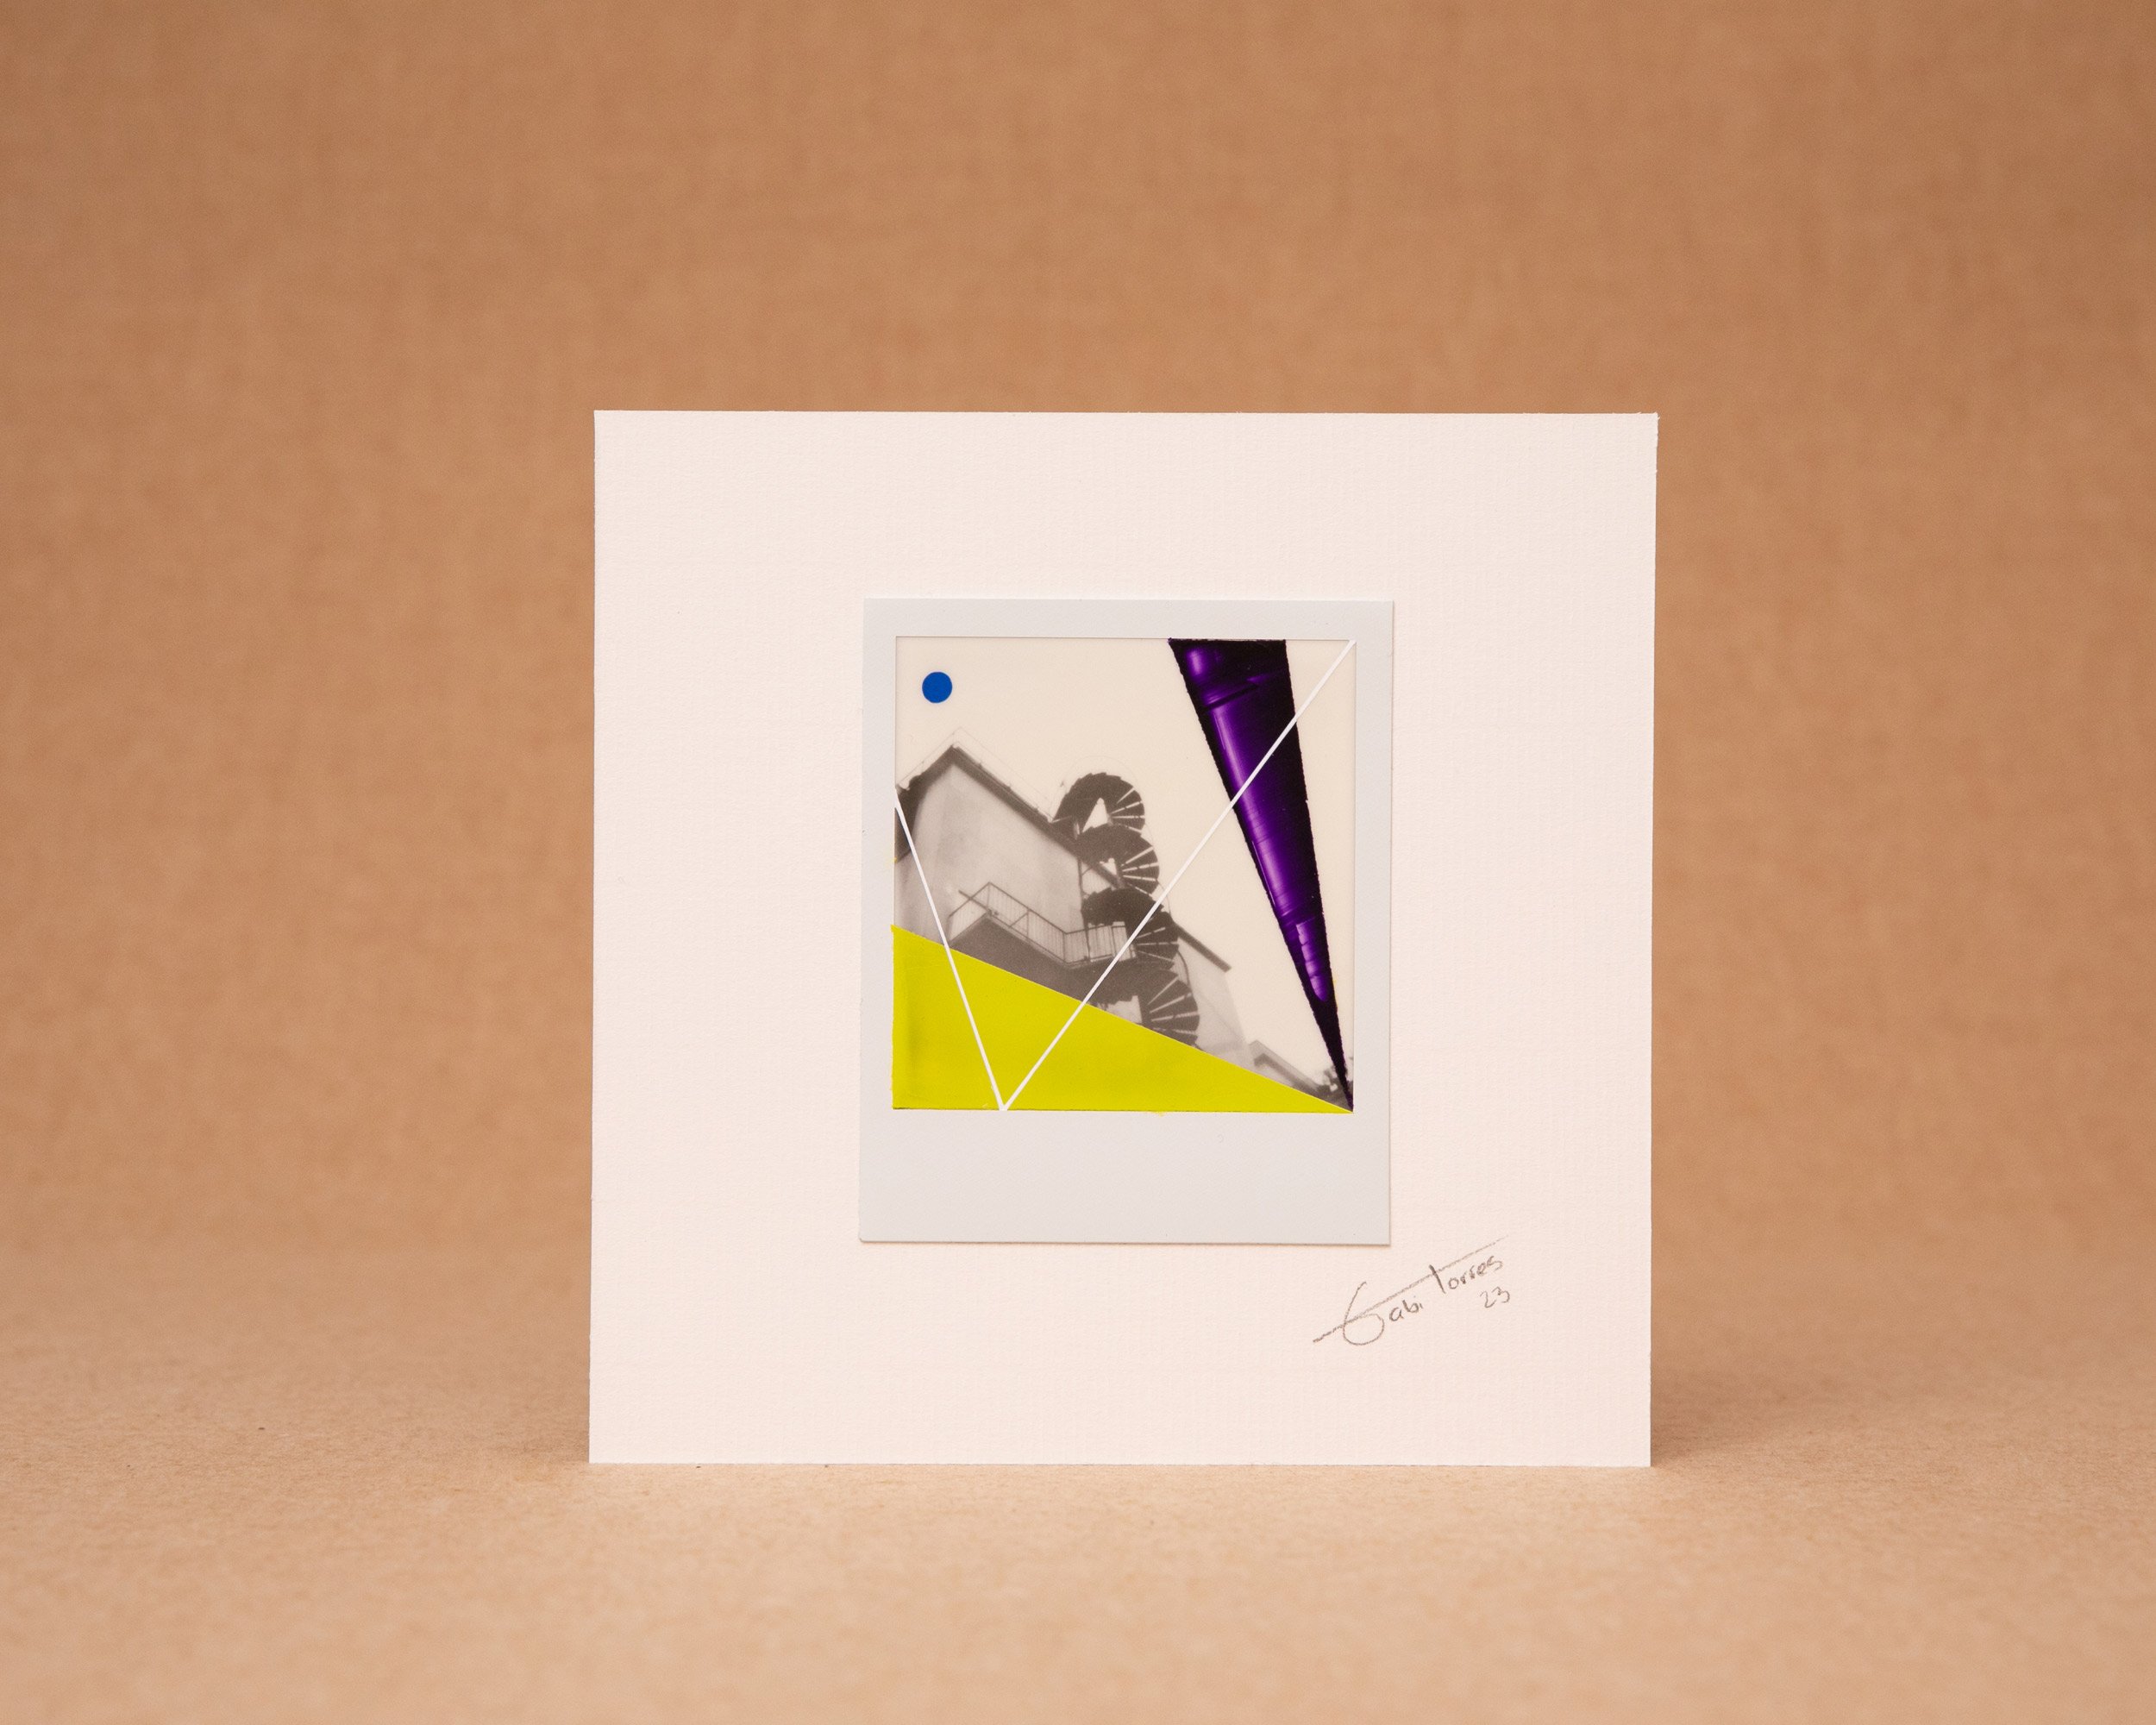 Abstract Painting on Polaroid - Paris £99.62